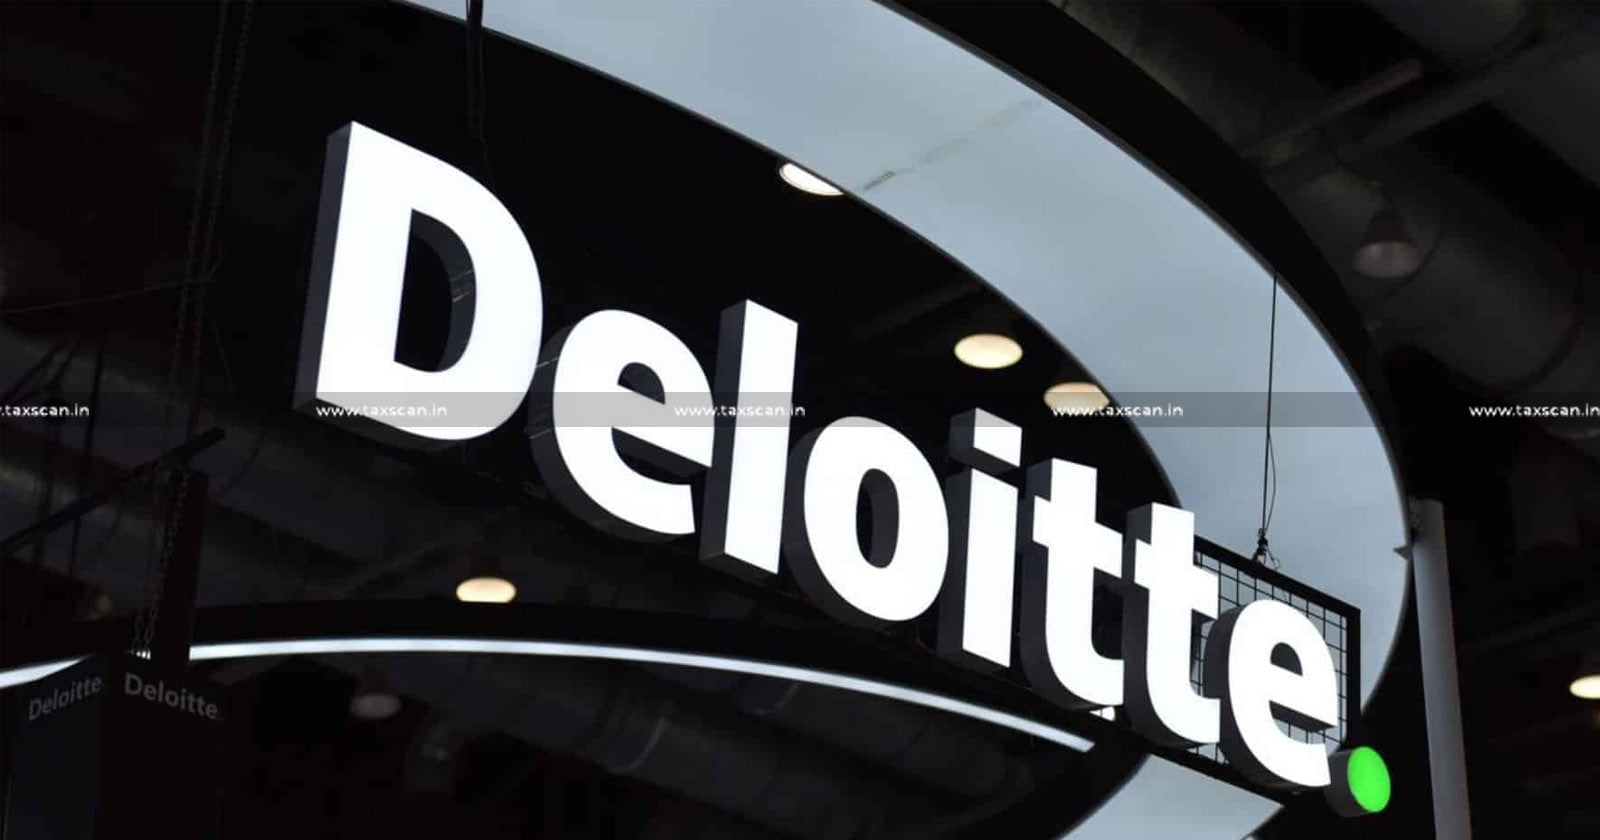 MBA Vacancy in Deloitte - CA Vacancy in Deloitte - Job scan - Deloitte careers - TAXSCAN